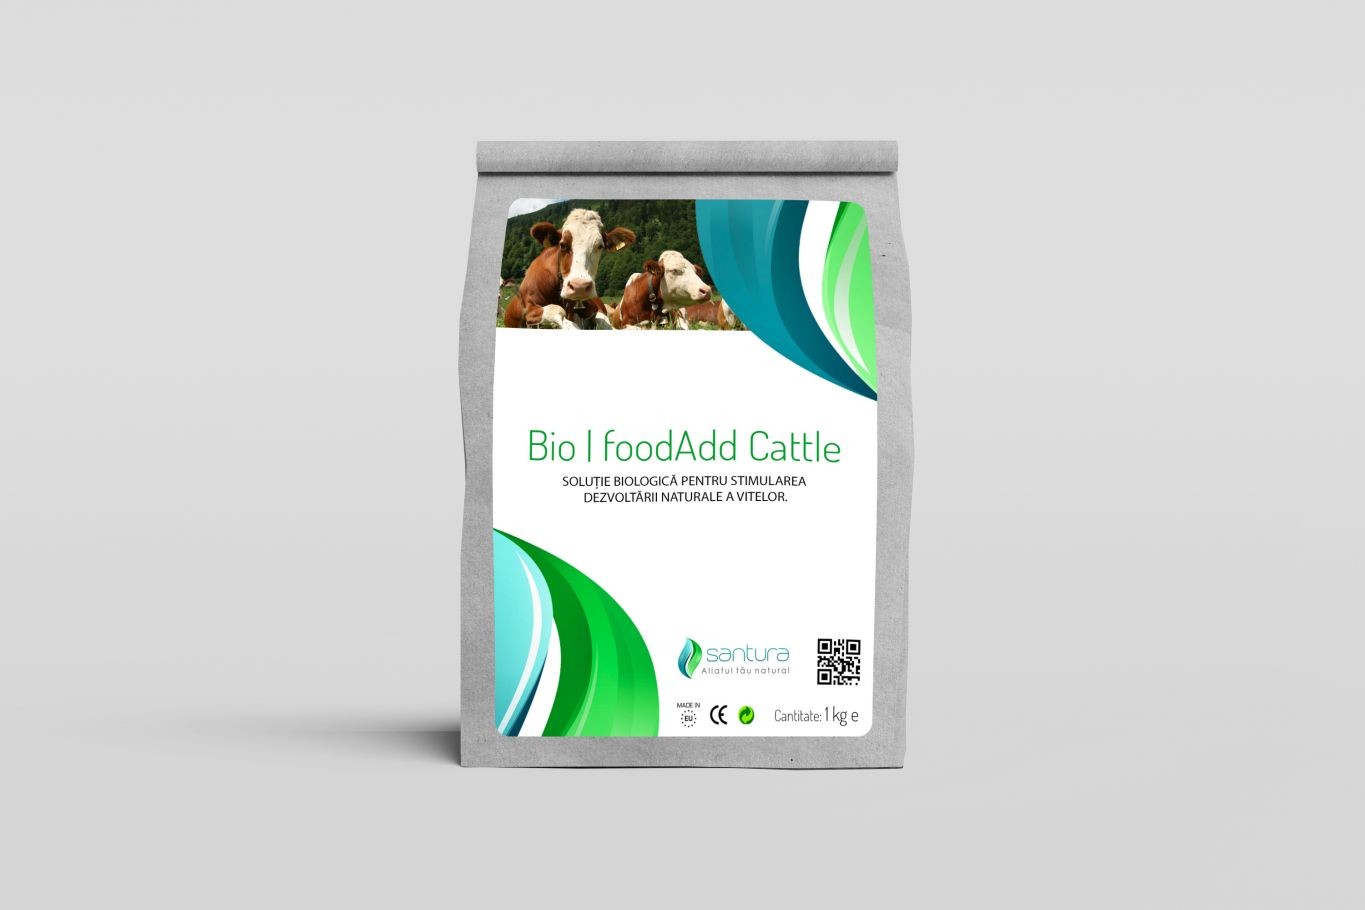 Bio|foodAdd Cattle